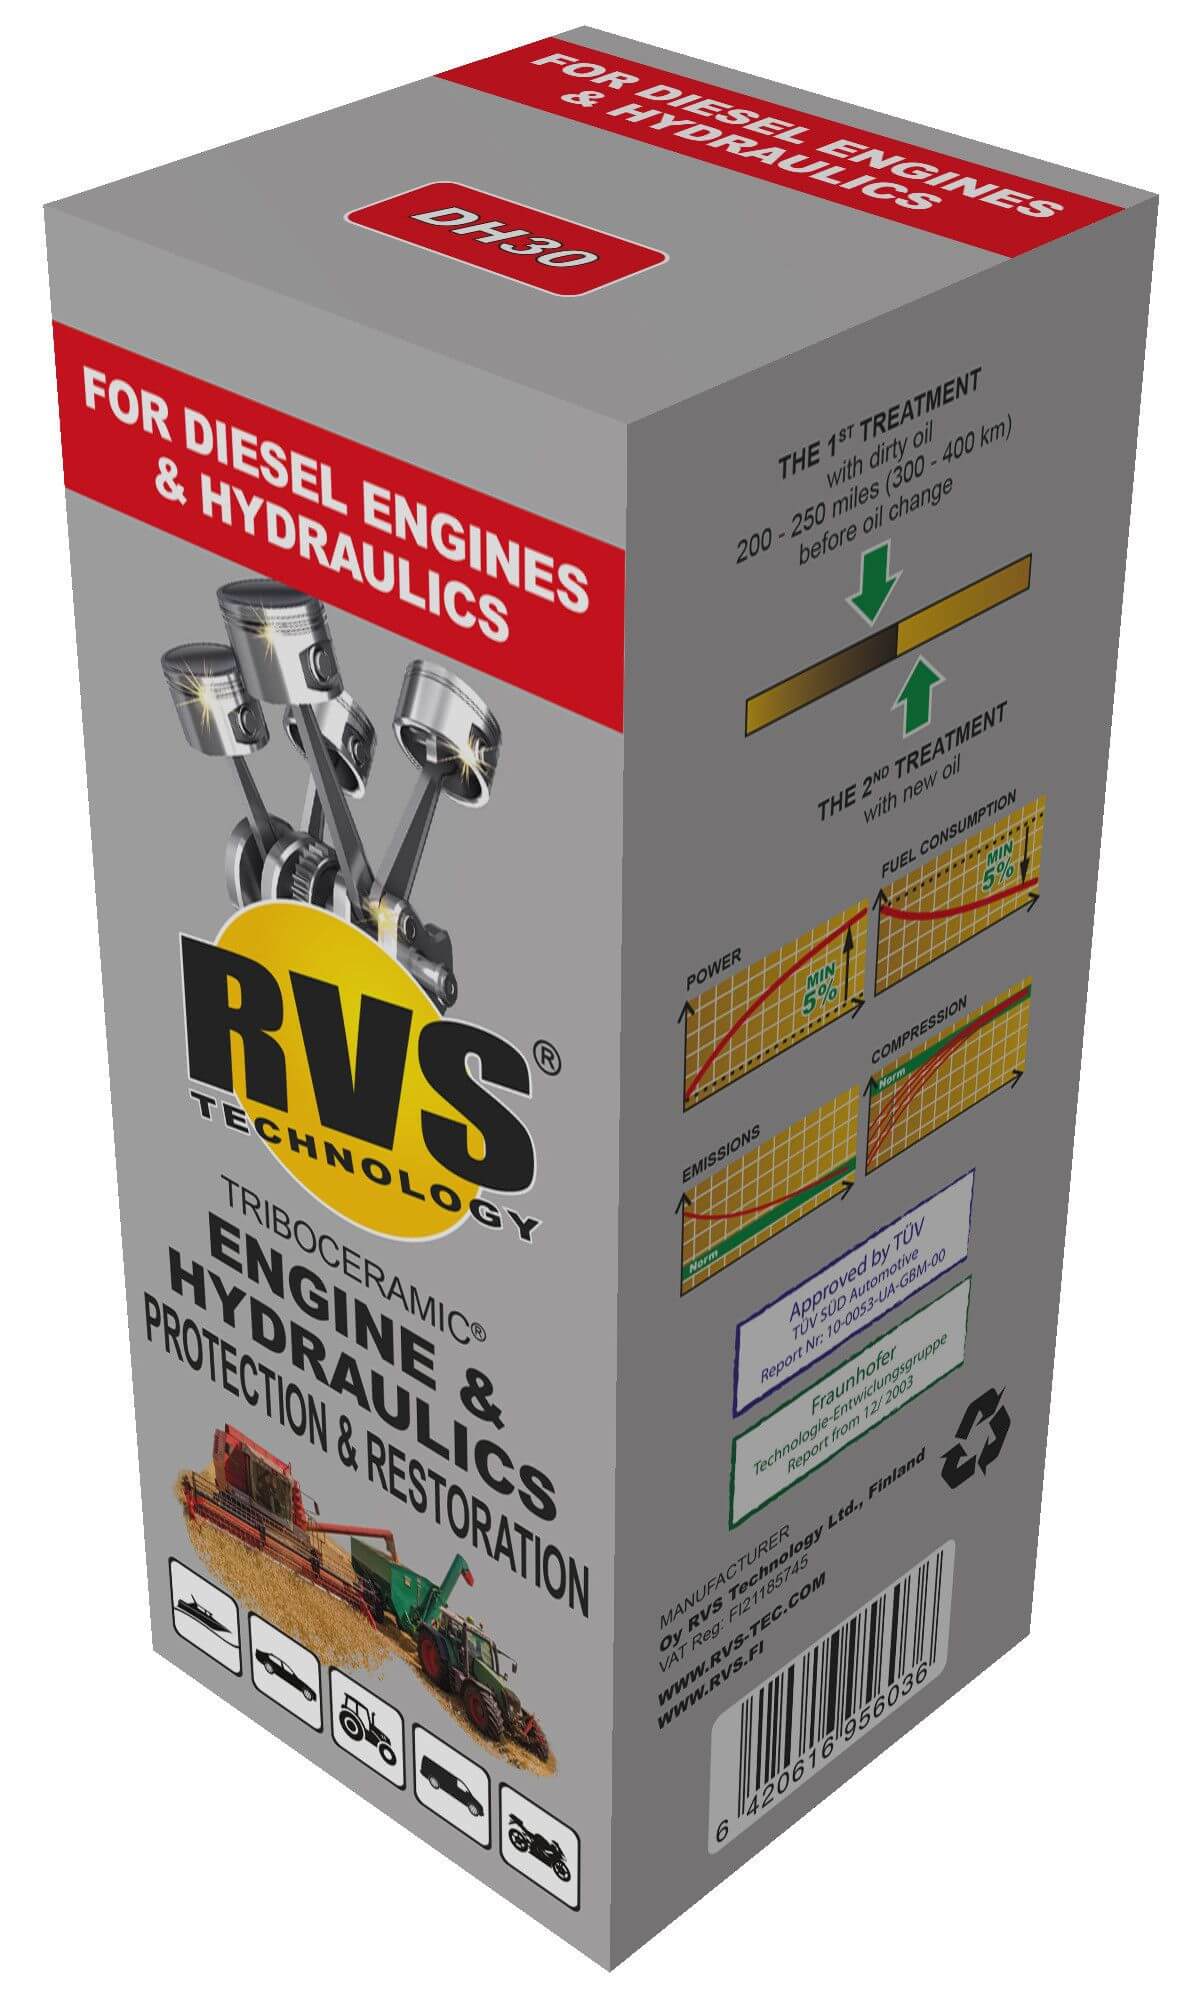 Moottorin suoja- ja käsittelyaine (hydrauliikka / dieselmoottorit), RVS